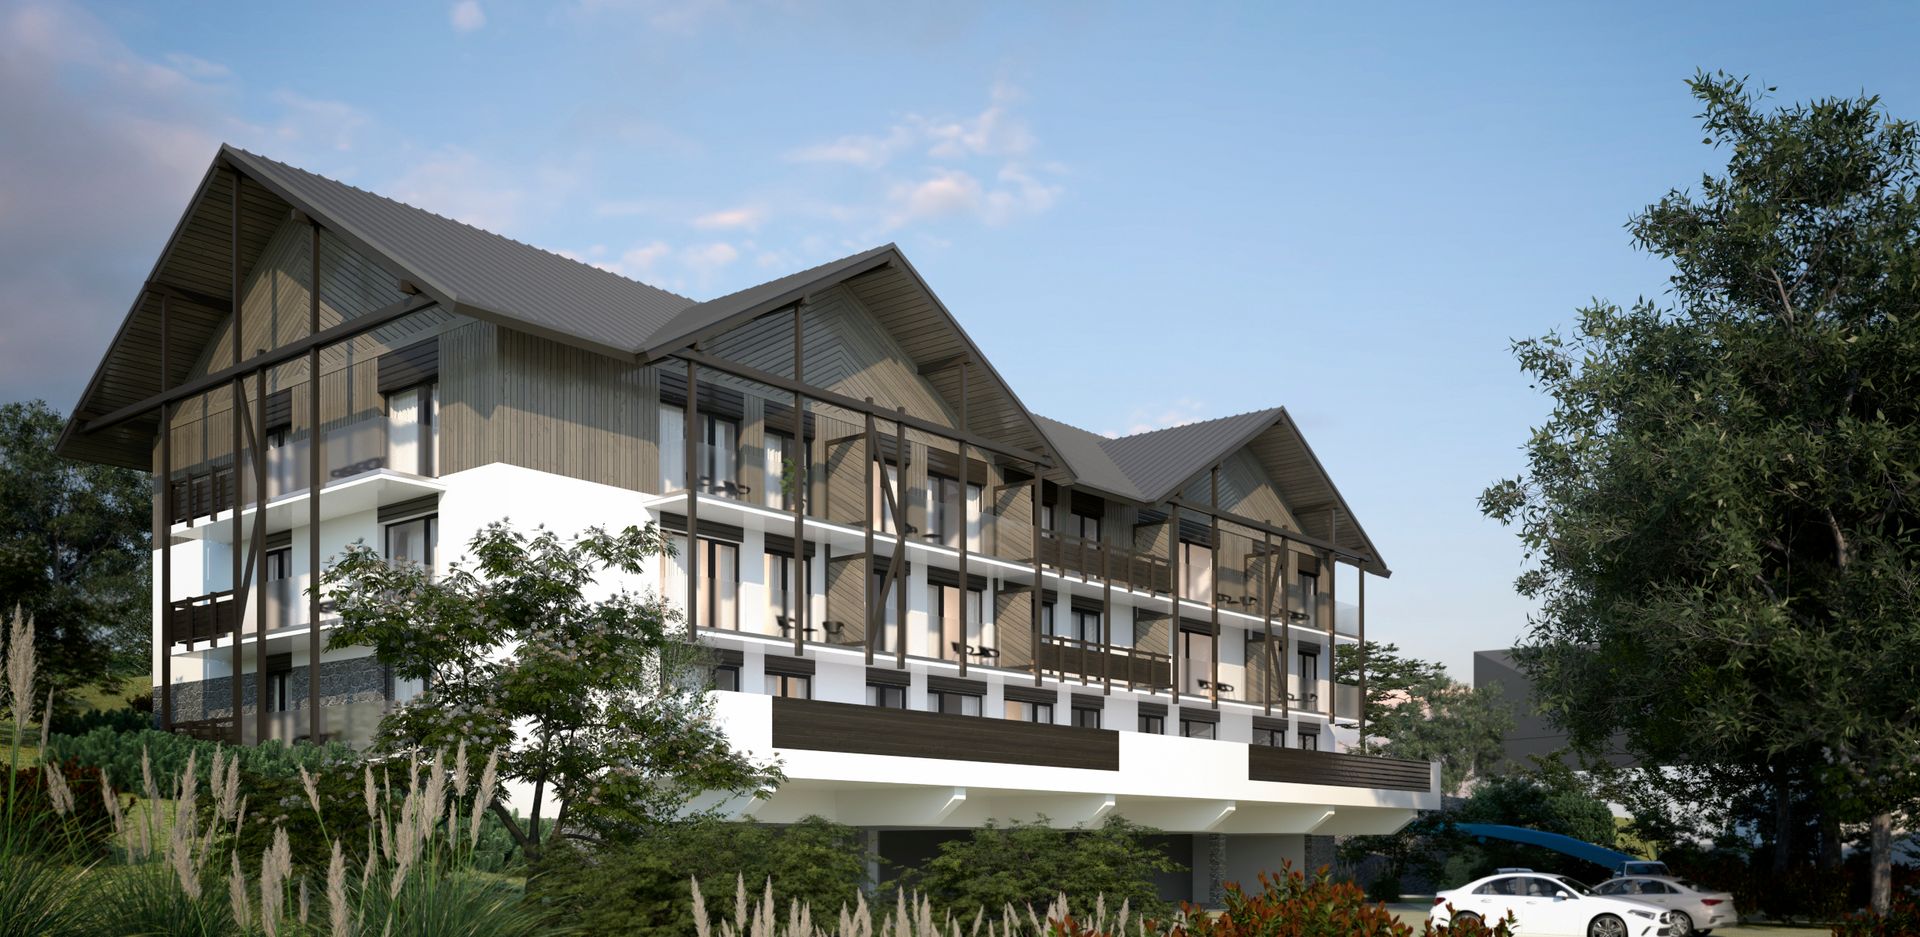 Development Five Seasons wybuduje w Świeradowie-Zdroju nowy kompleks hotelowy